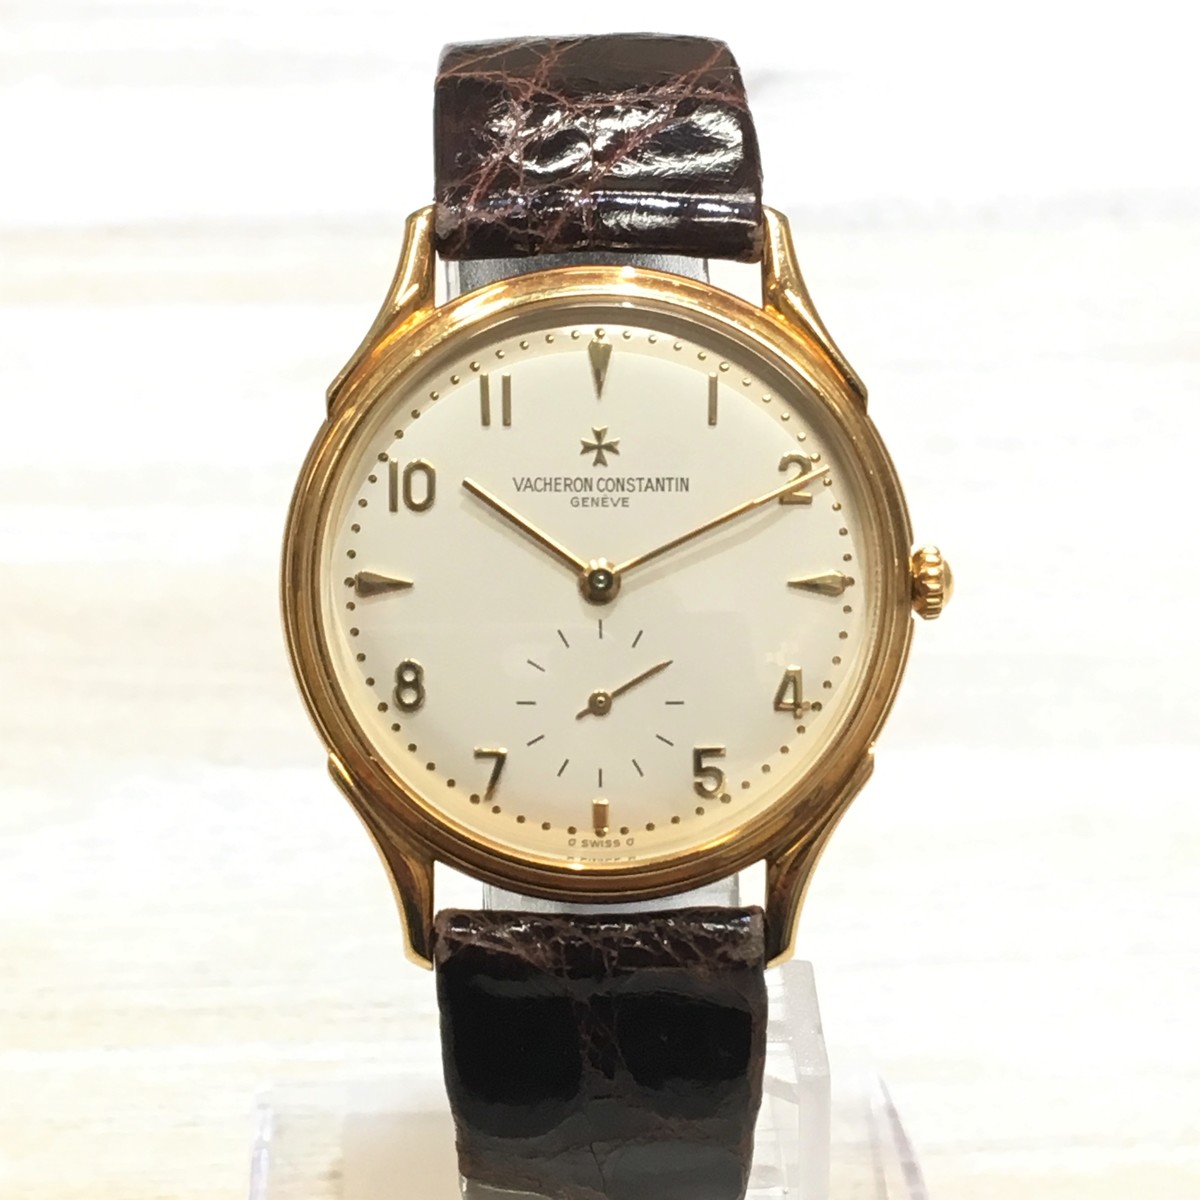 ヴァシュロンコンスタンタンの750 スモセコ ラウンド 手巻き 腕時計の買取実績です。